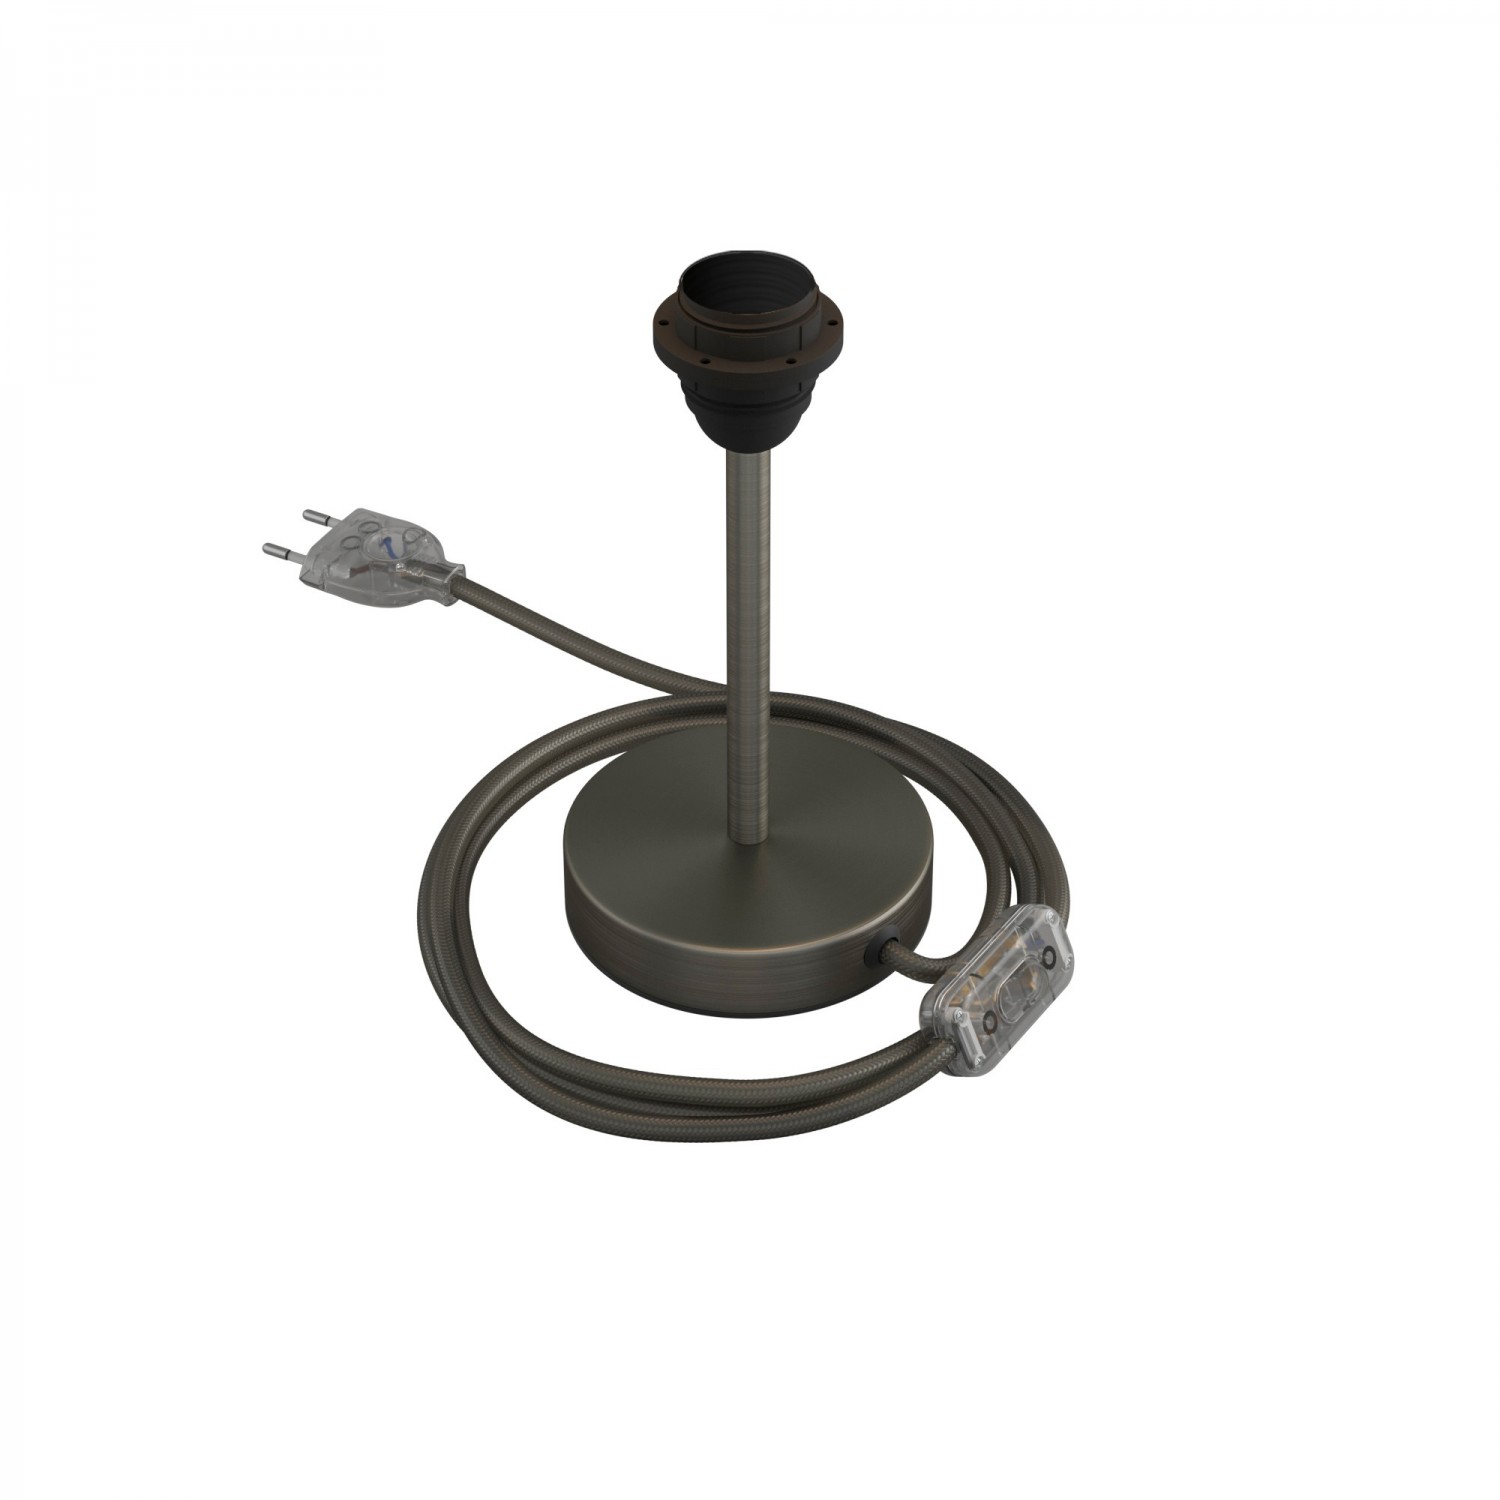 Alzaluce para pantalla - Lámpara de mesa de metal con clavija de 2 polos